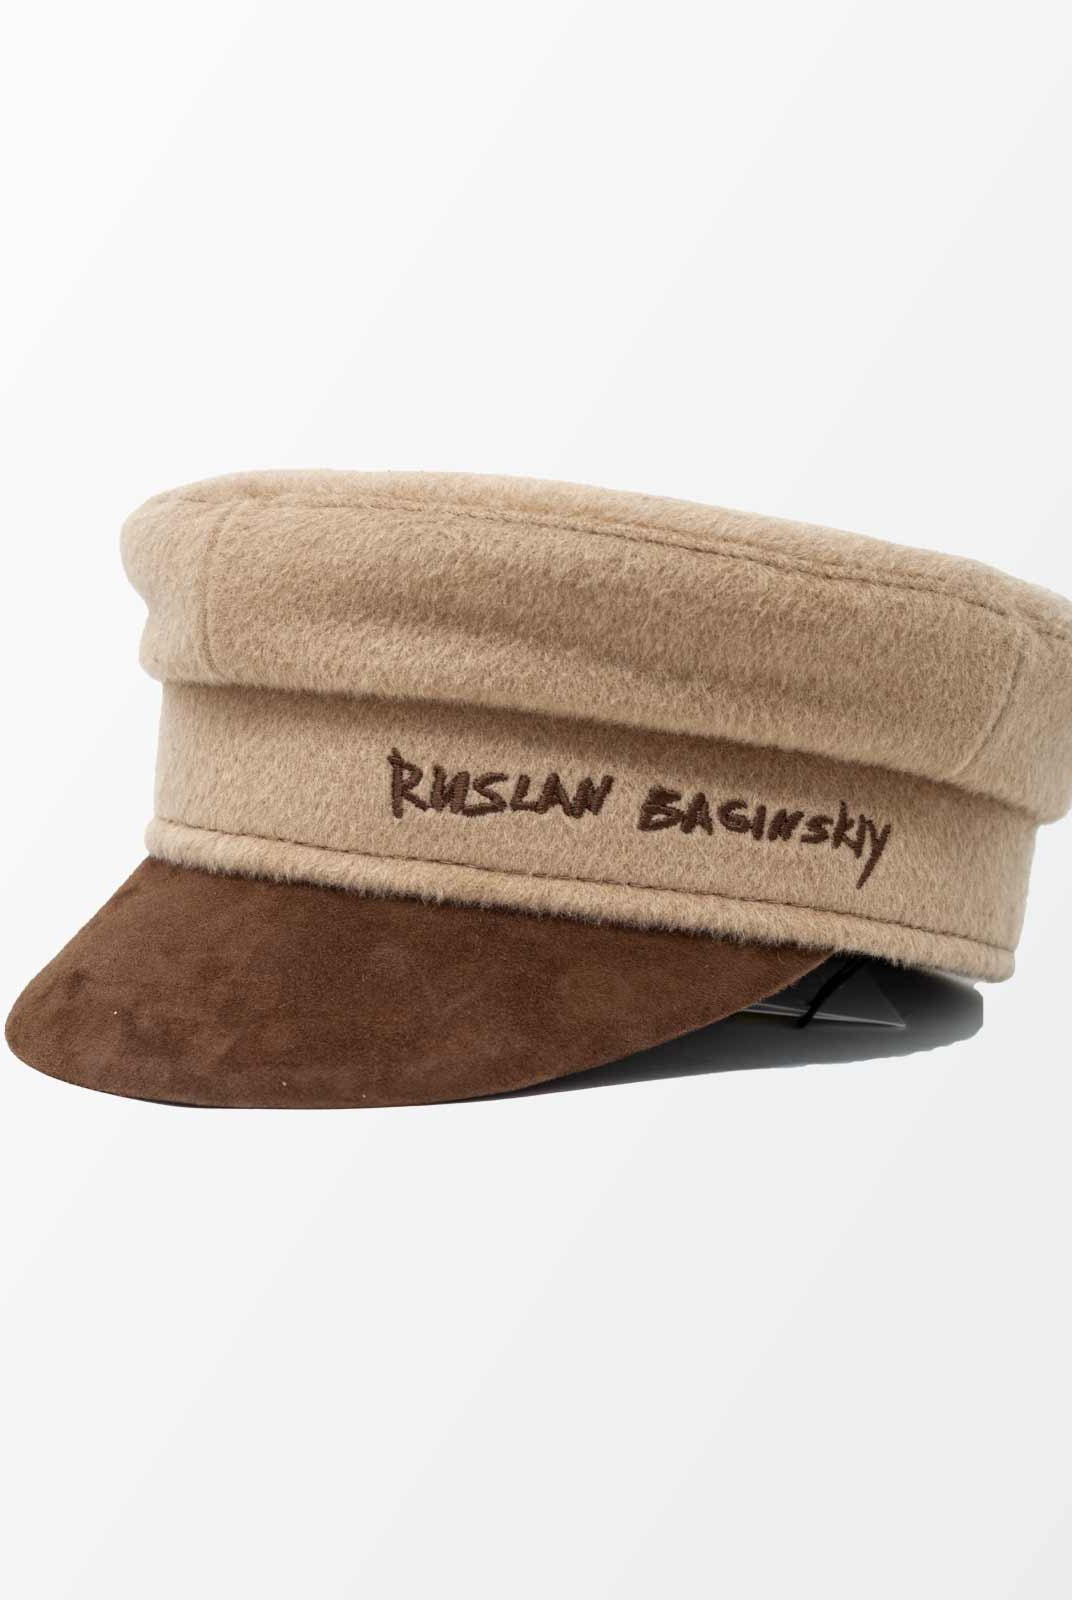 Cappello baker in lana- Ruslan Baginskiy -Giorgioquinto